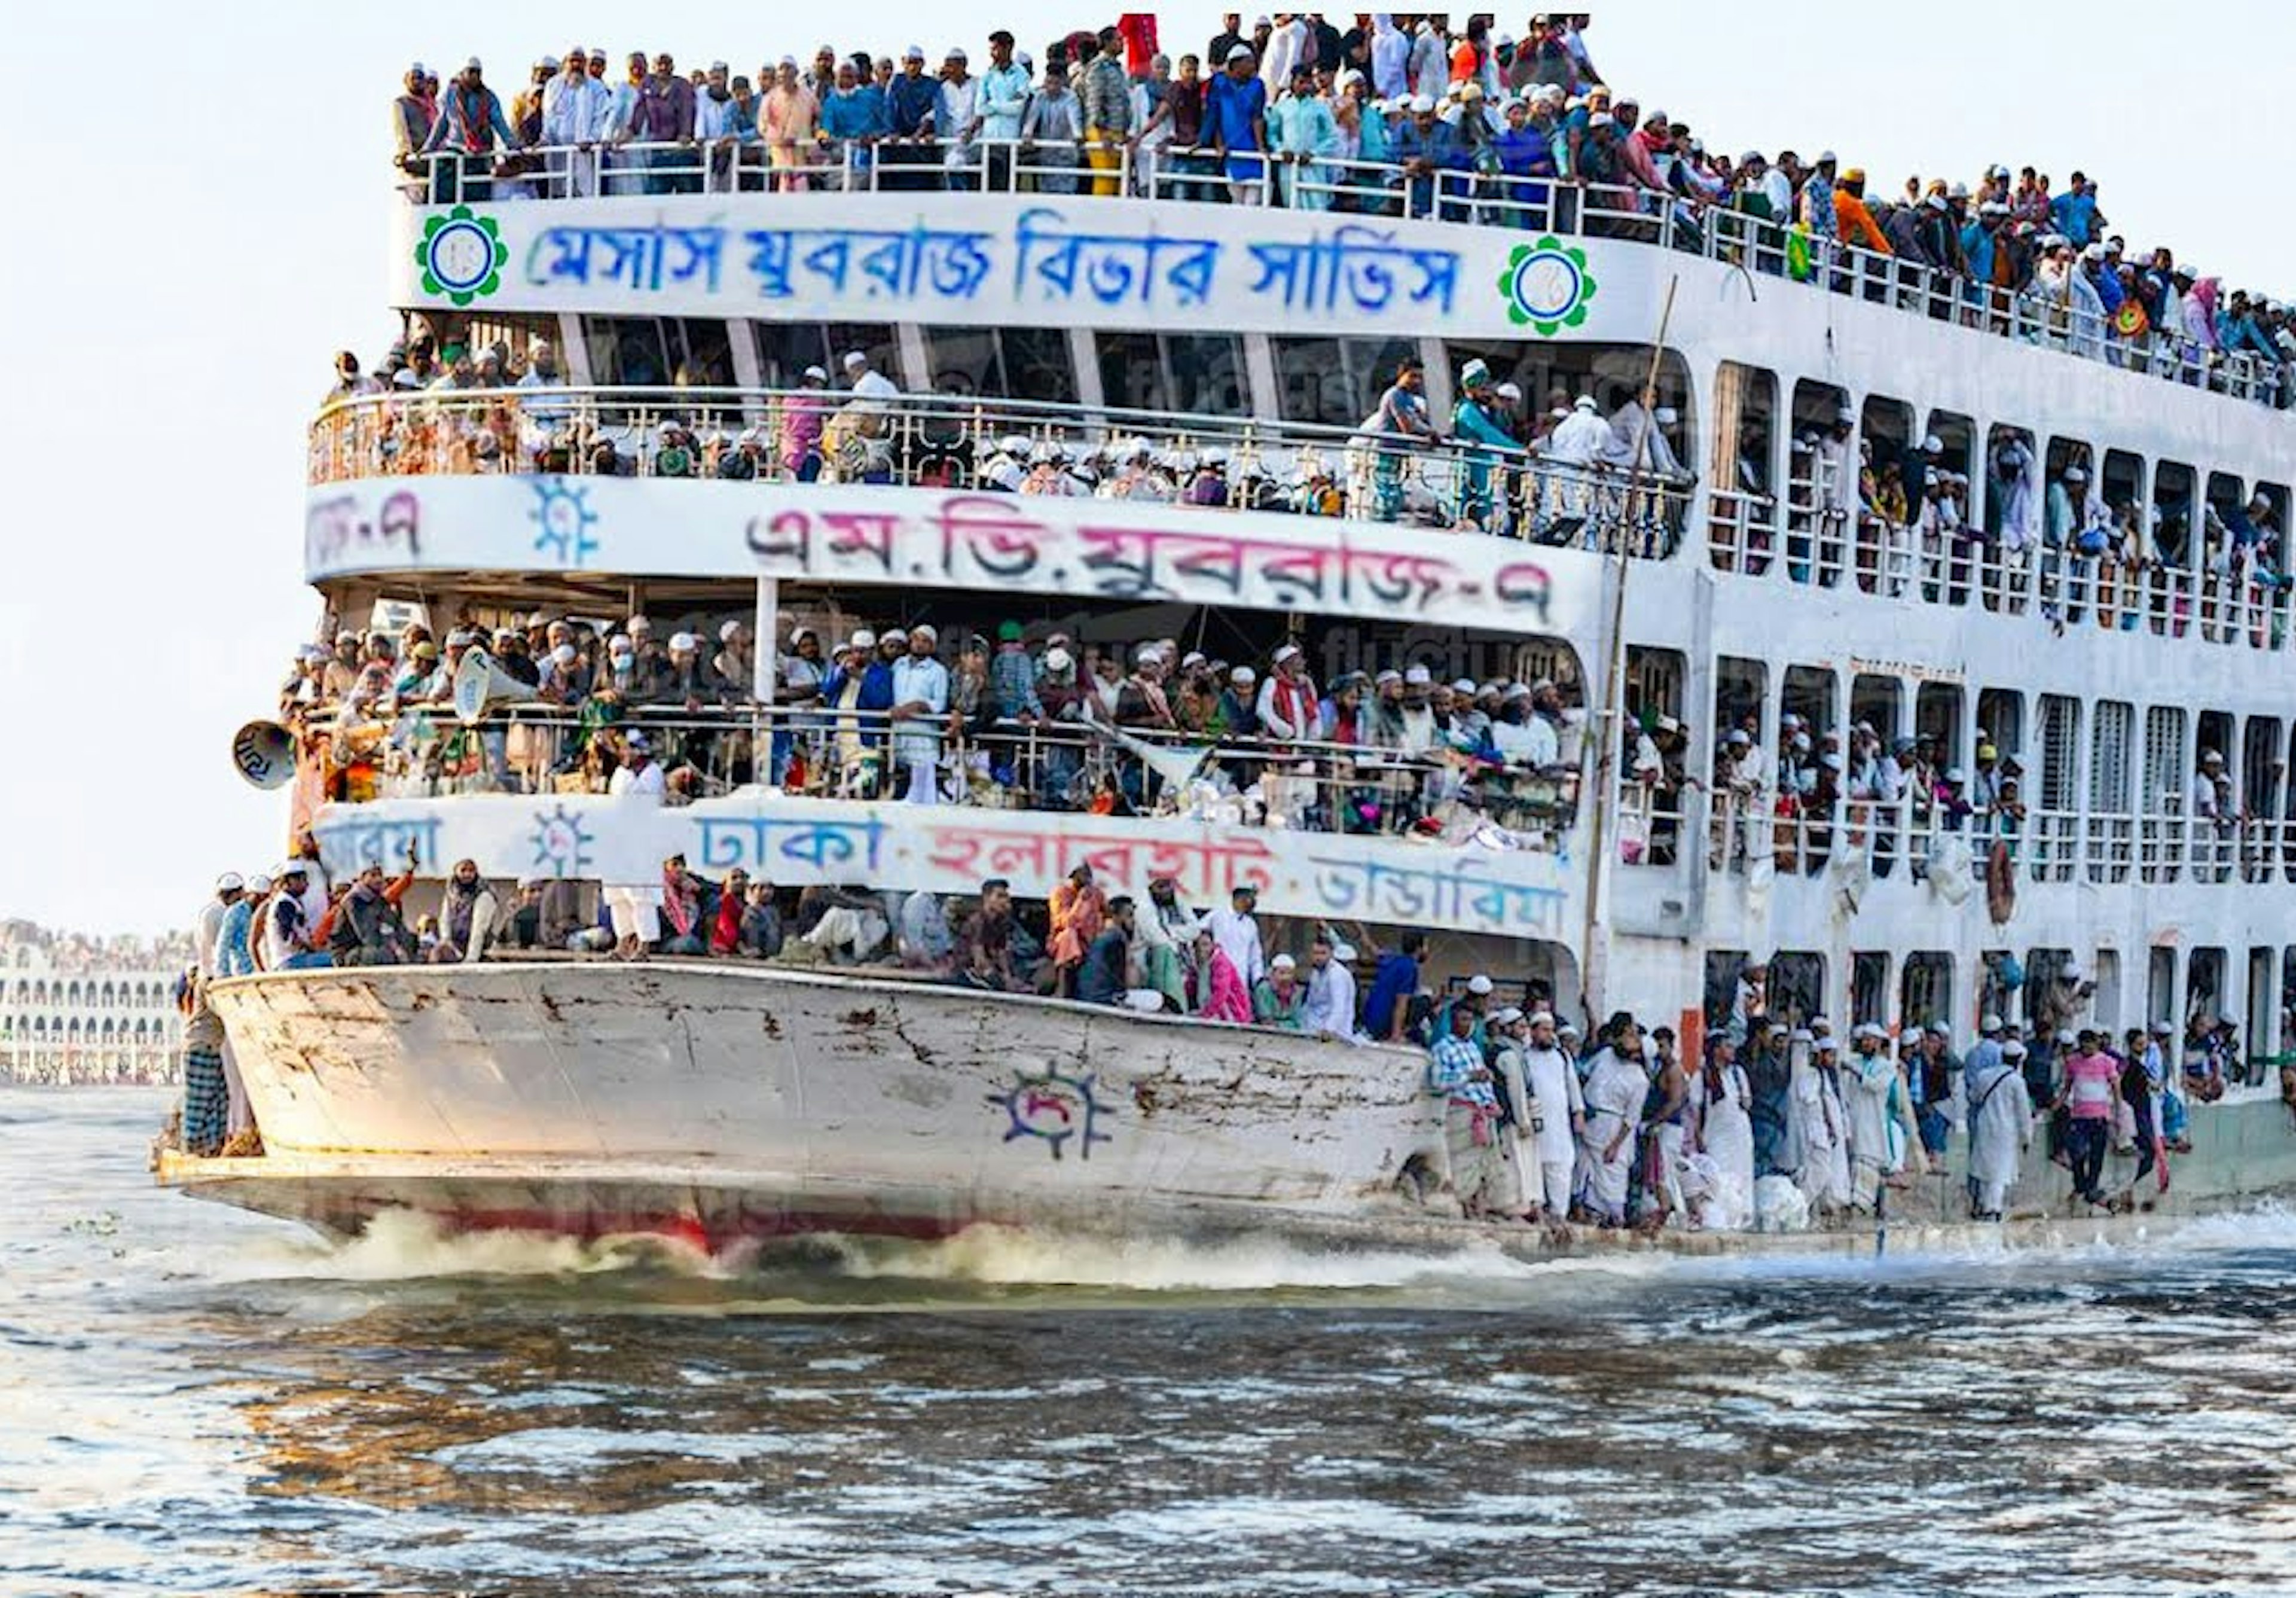 Överlastad färja som trafikerar Burigangafloden i Bangladesh.